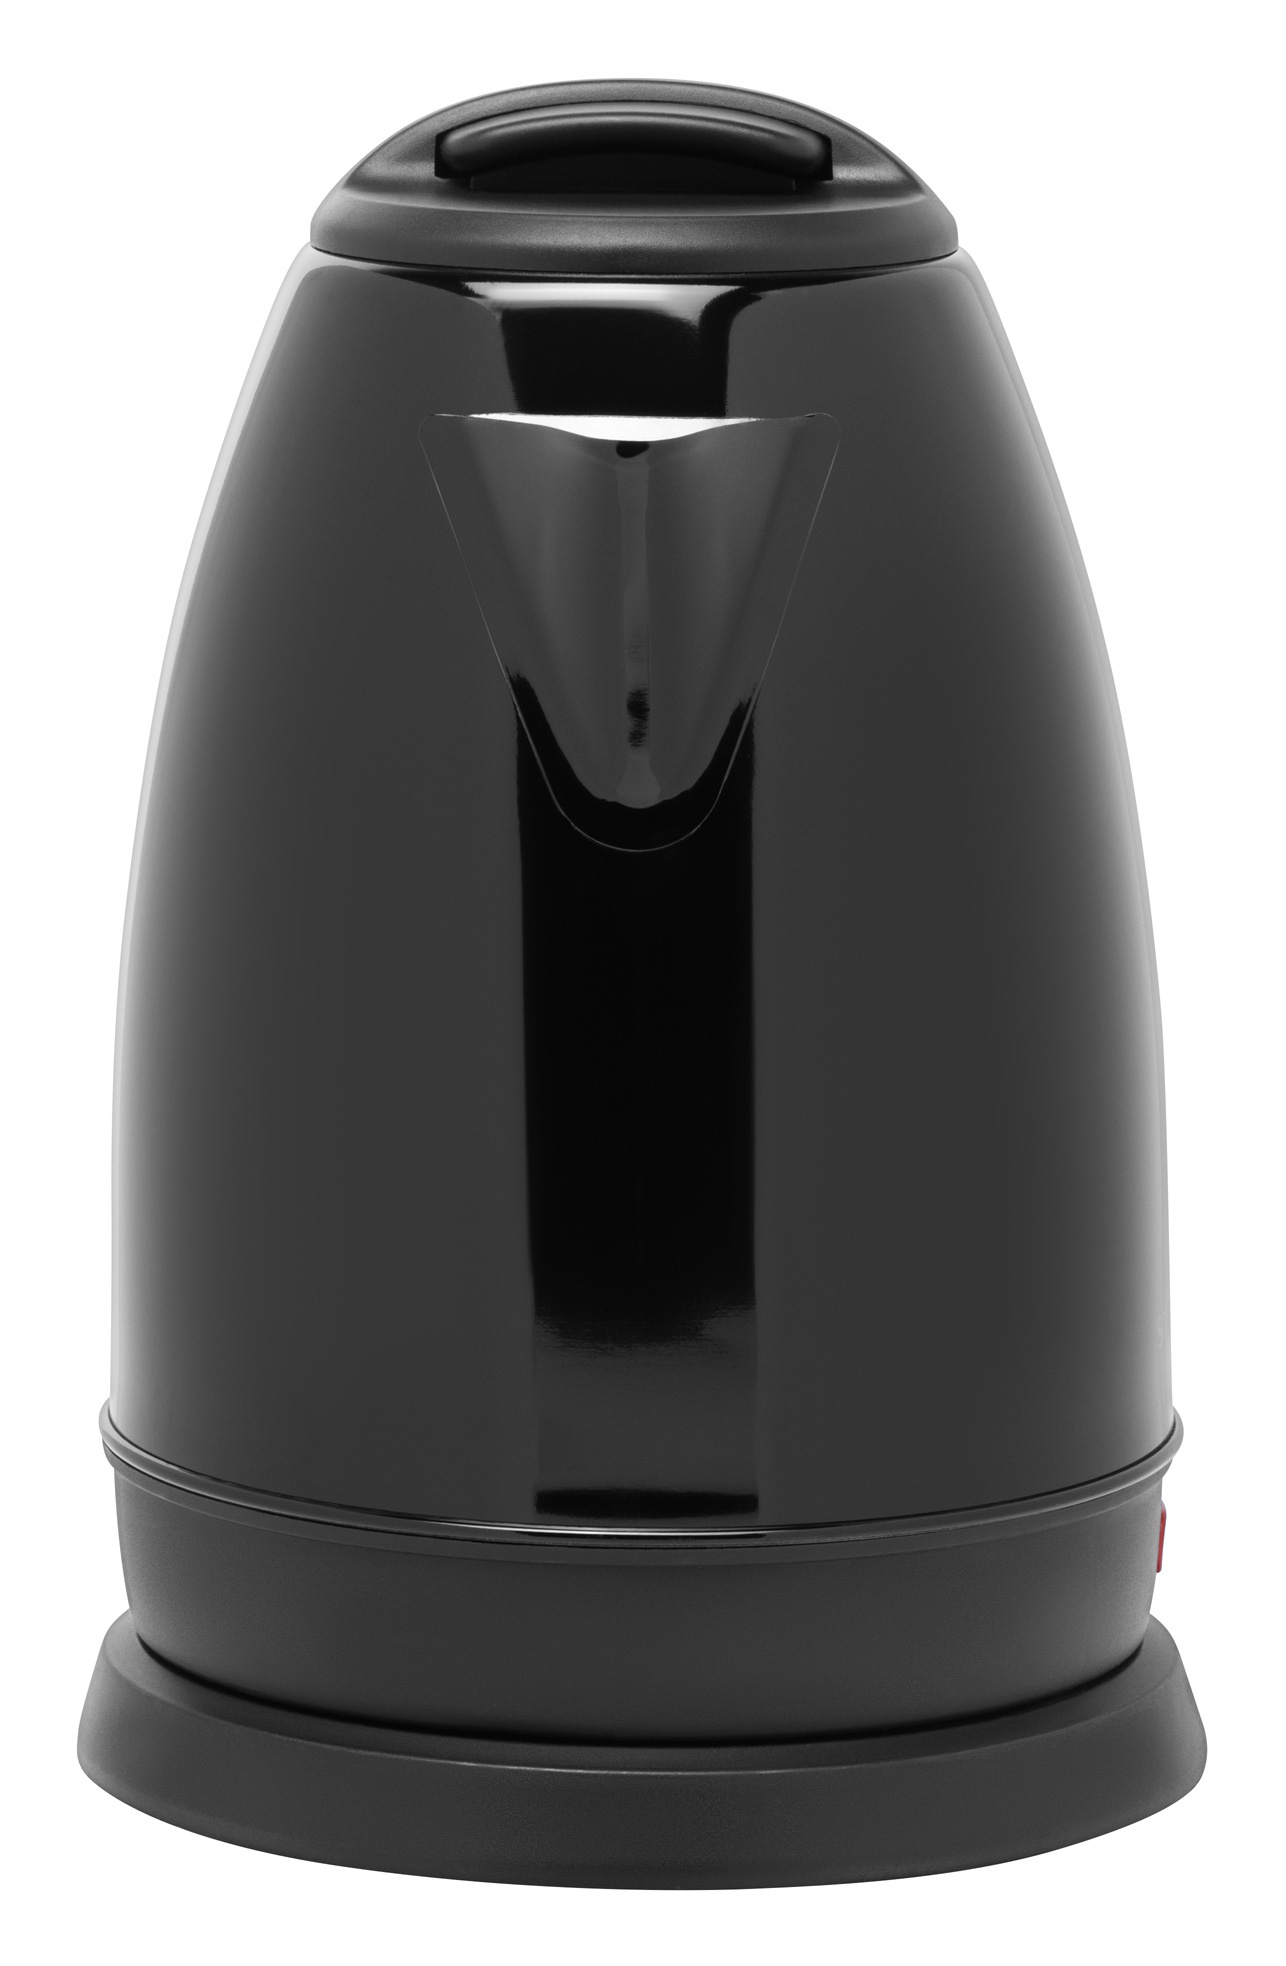 Чайник электрический Starwind SKS2050 черный, нержавеющая сталь/пластик от магазина Старвинд